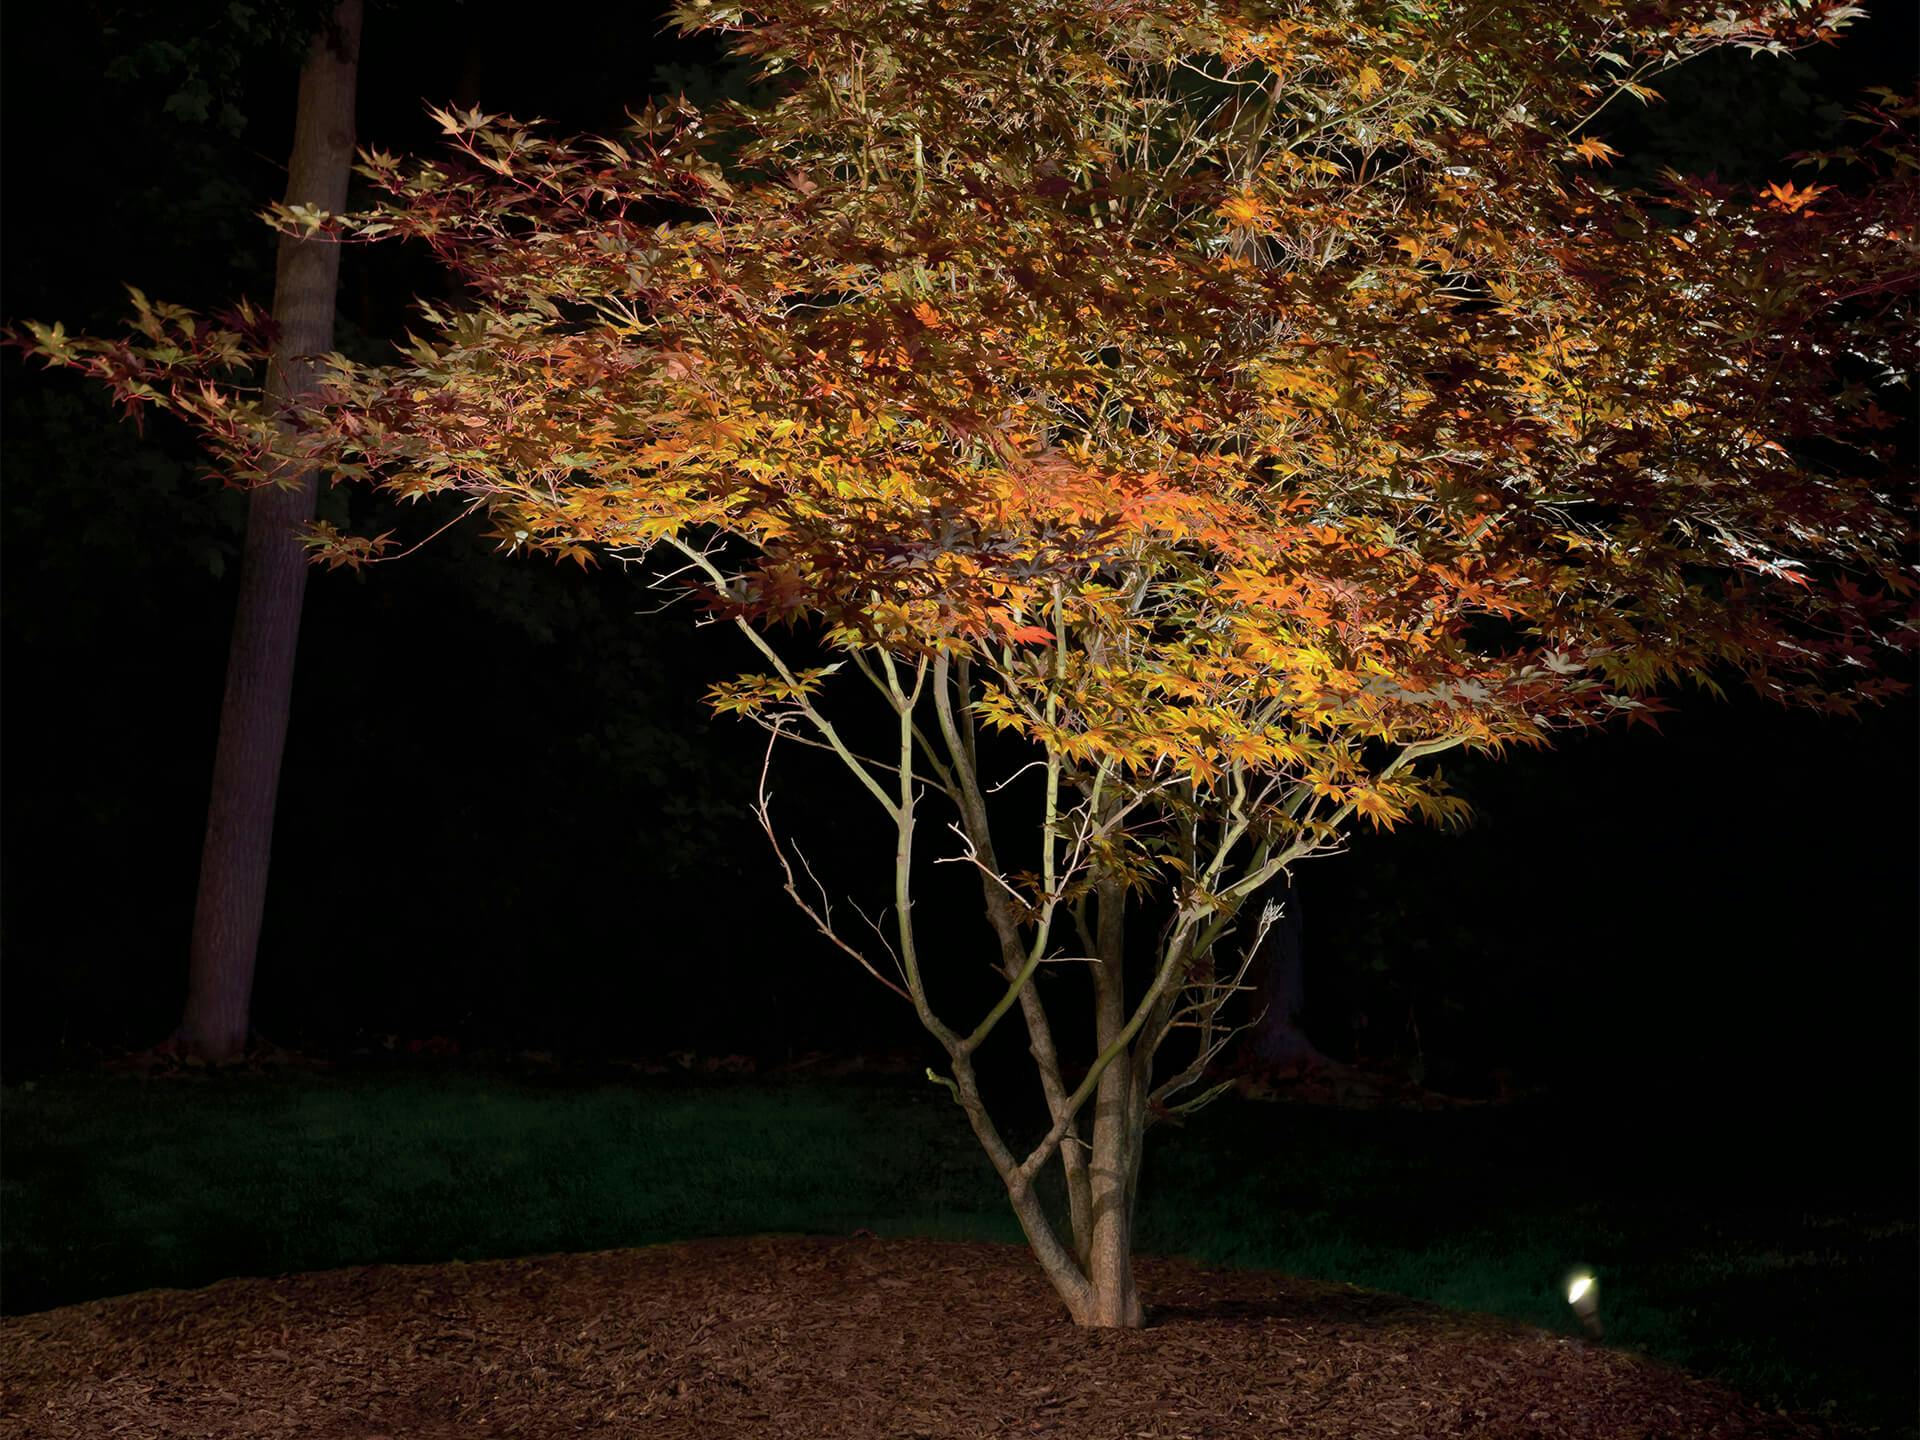 12v LED lighting a tree at night